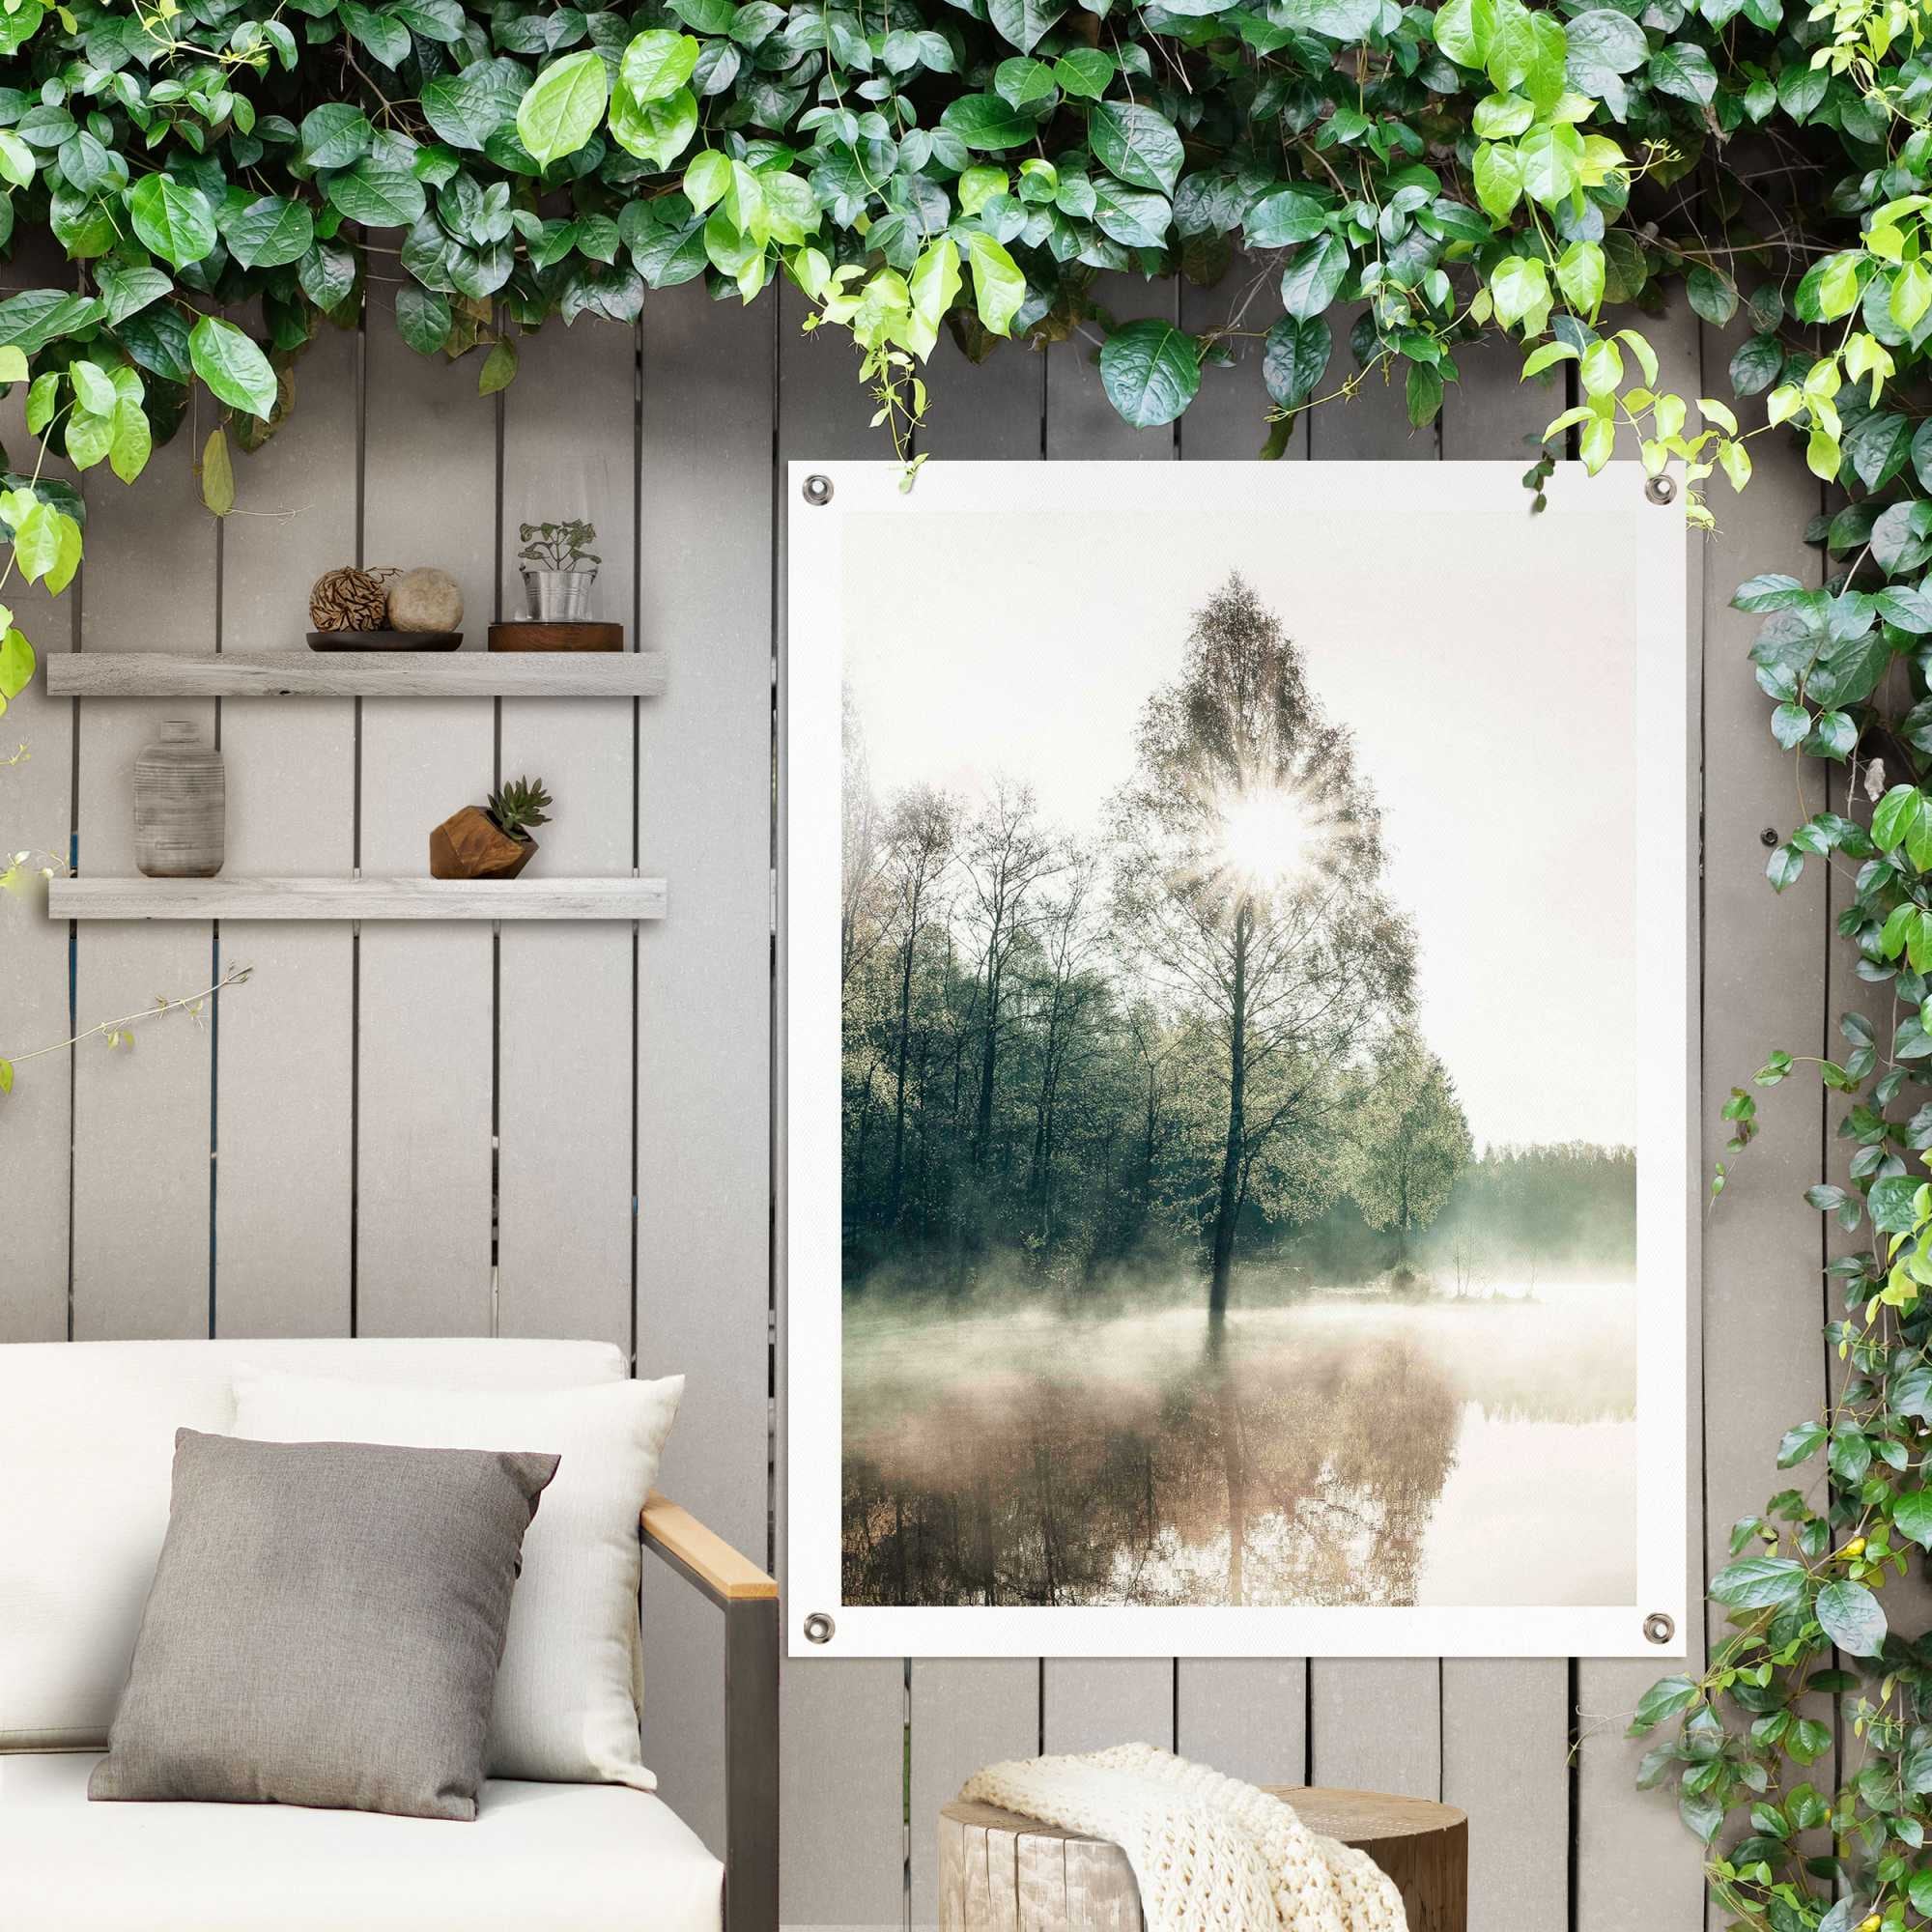 bestellen Garten online durch die Poster oder Jelmoli-Versand Balkon für Reinders! Bäume«, | Outdoor »Sonne